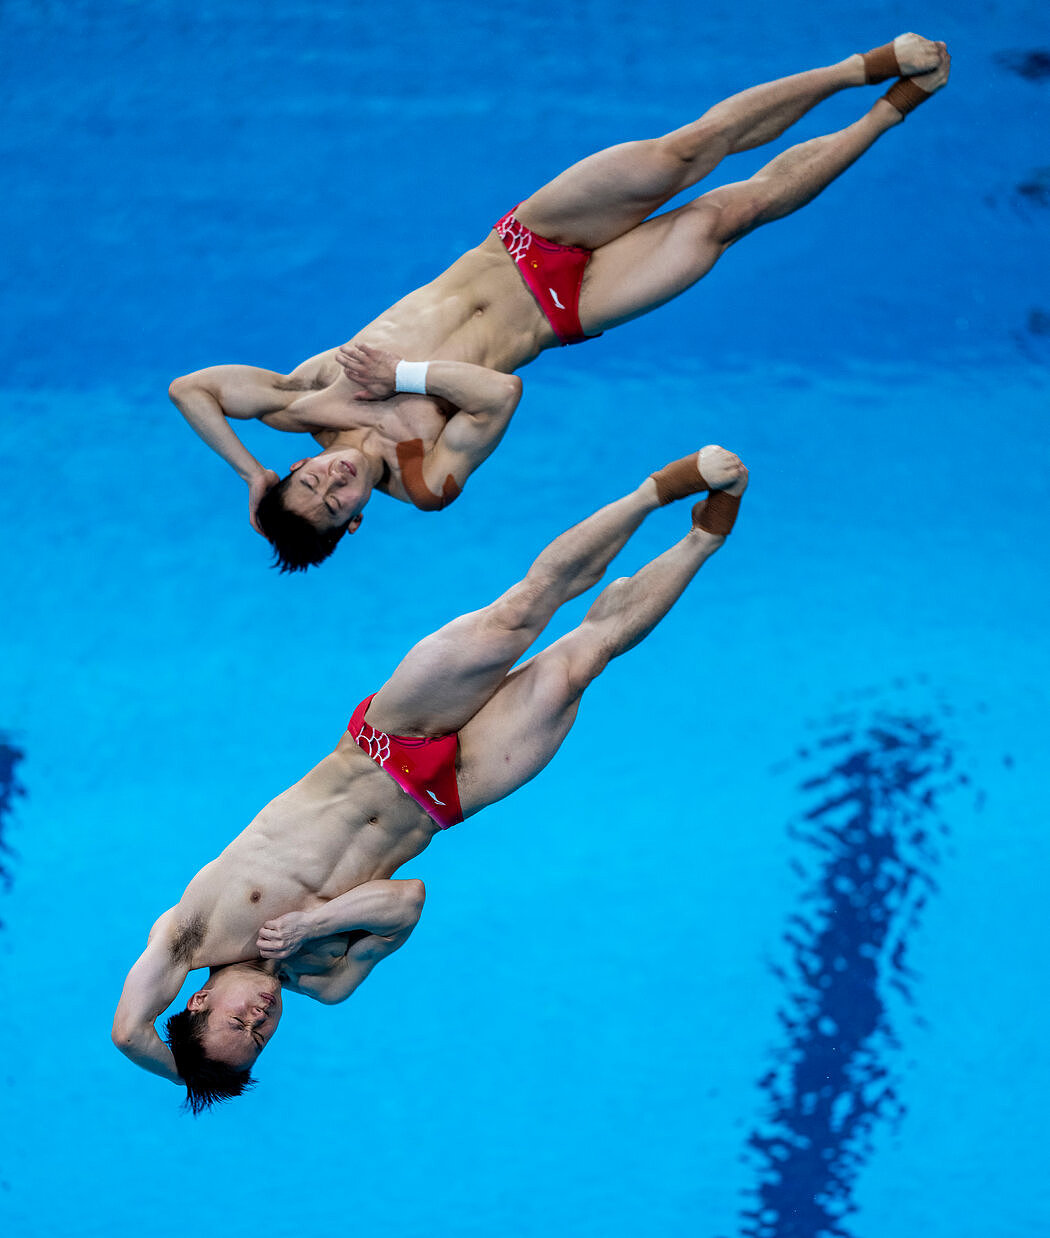 中国跳水选手谢思埸、王宗源本周三获得了男子双人3米板冠军。跳水是中国的传统强项之一。